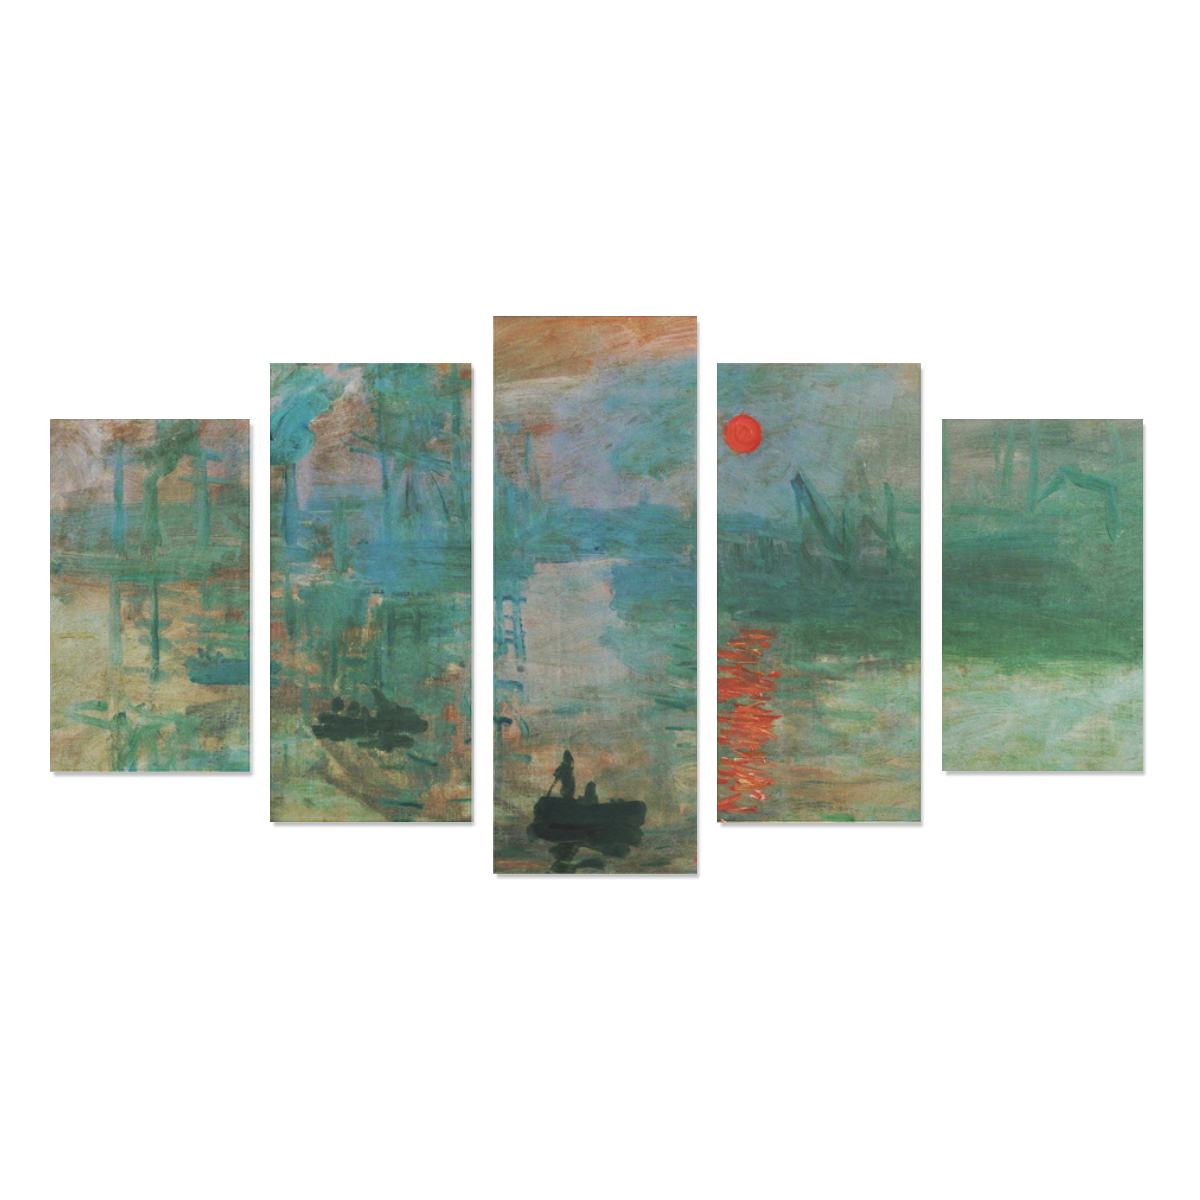 Impression Sunrise Claude Monet Fine Art Canvas Print Sets A (No Frame)